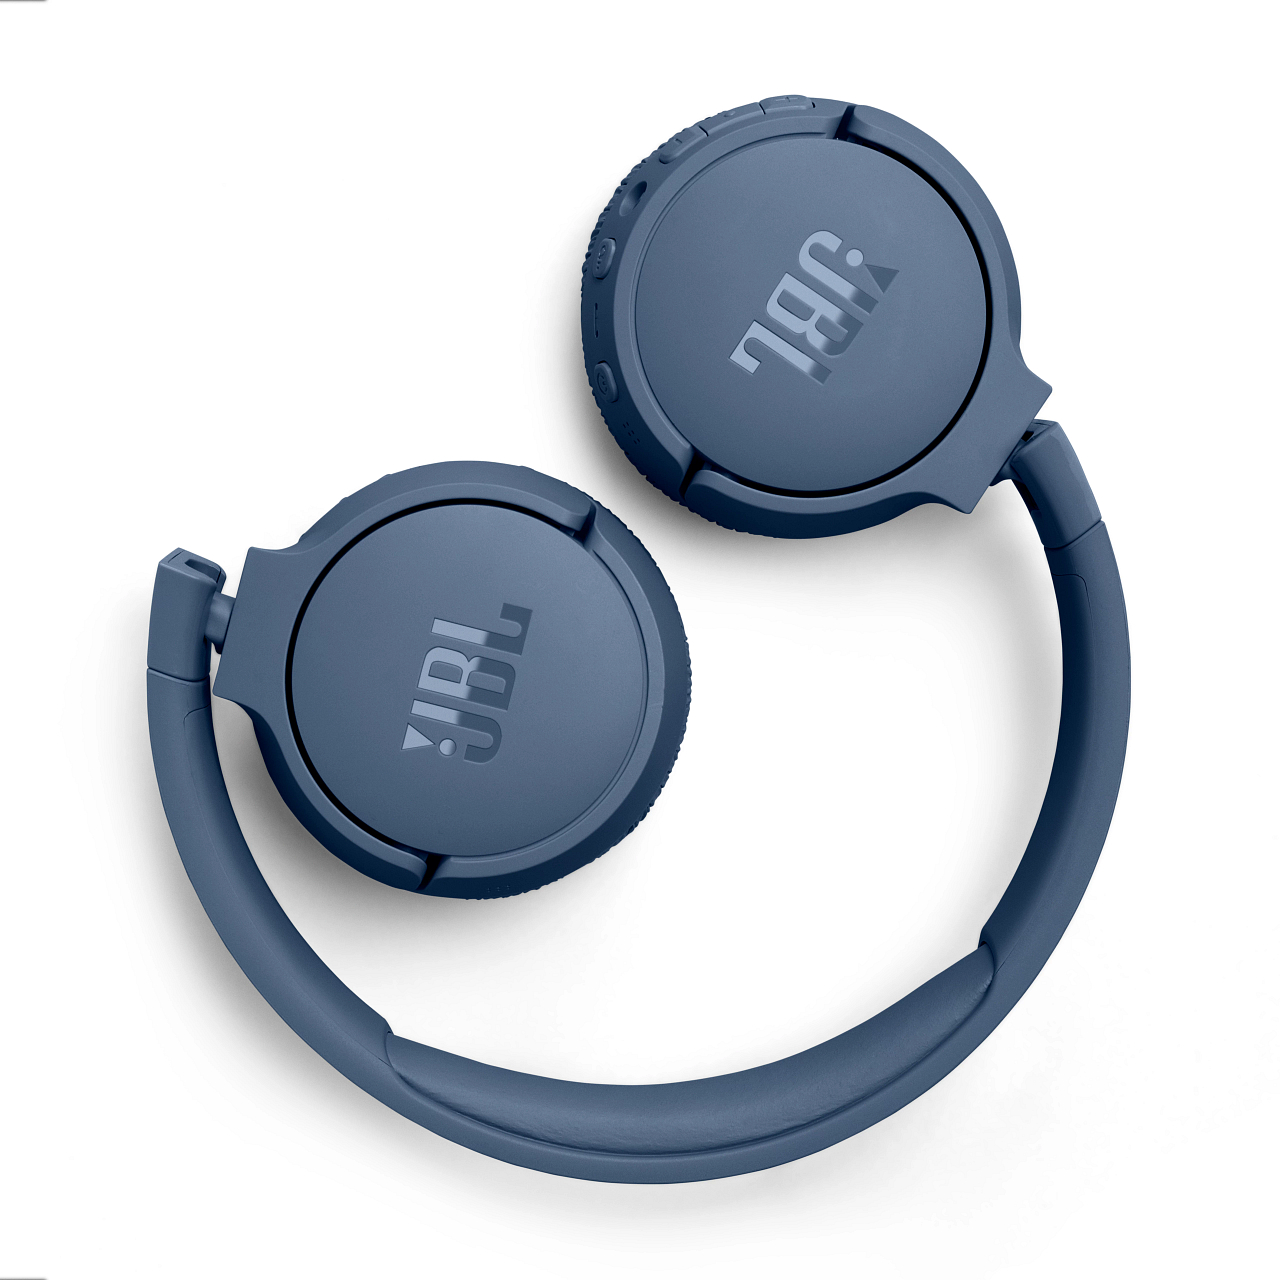 On-ear Bluetooth Blau TUNE 670NC, Kopfhörer JBL